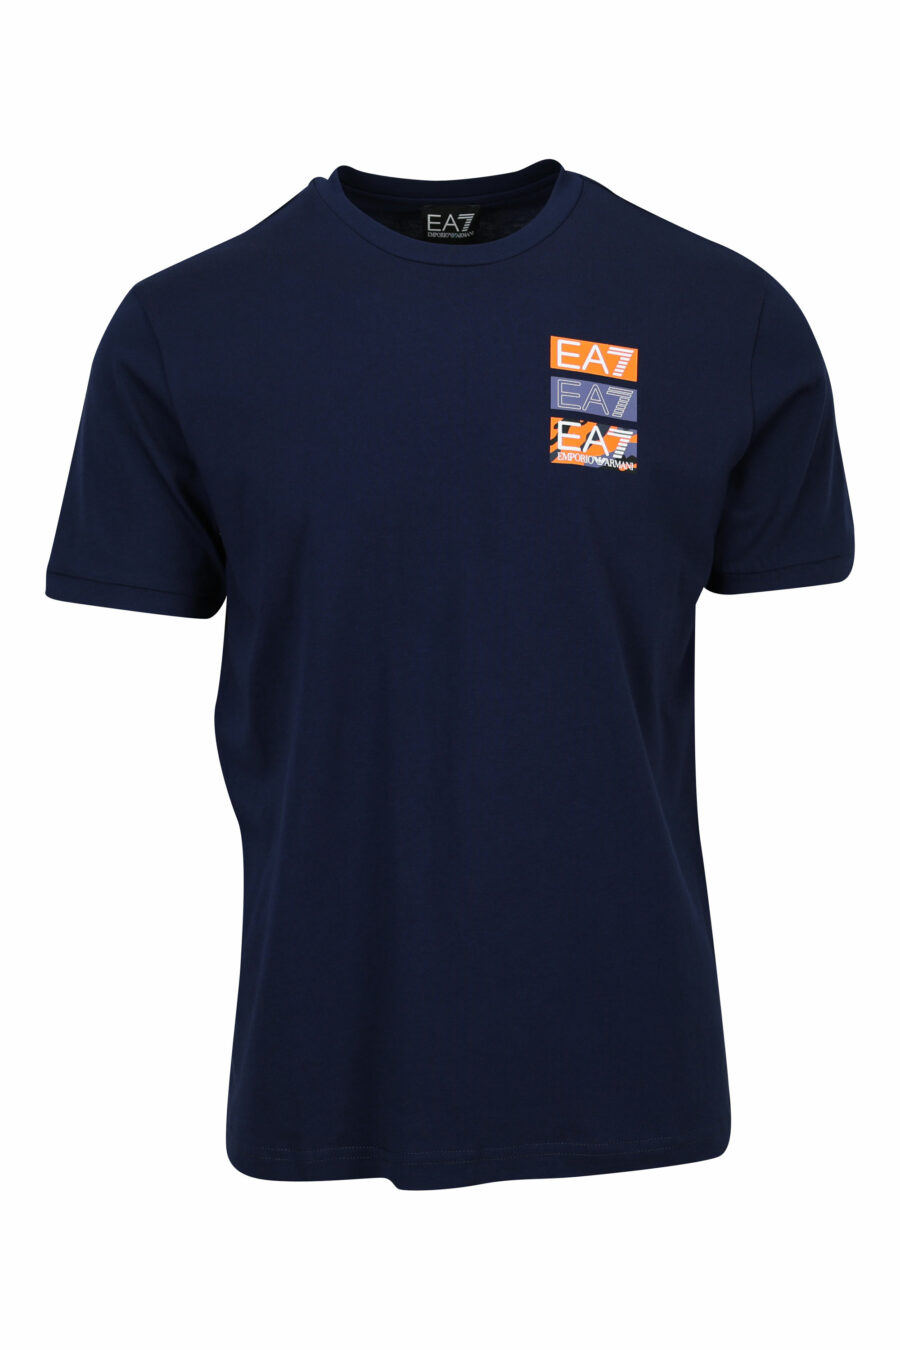 Camiseta azul oscuro con minilogo "lux identity" camuflado y estampado detrás - 8058947479764